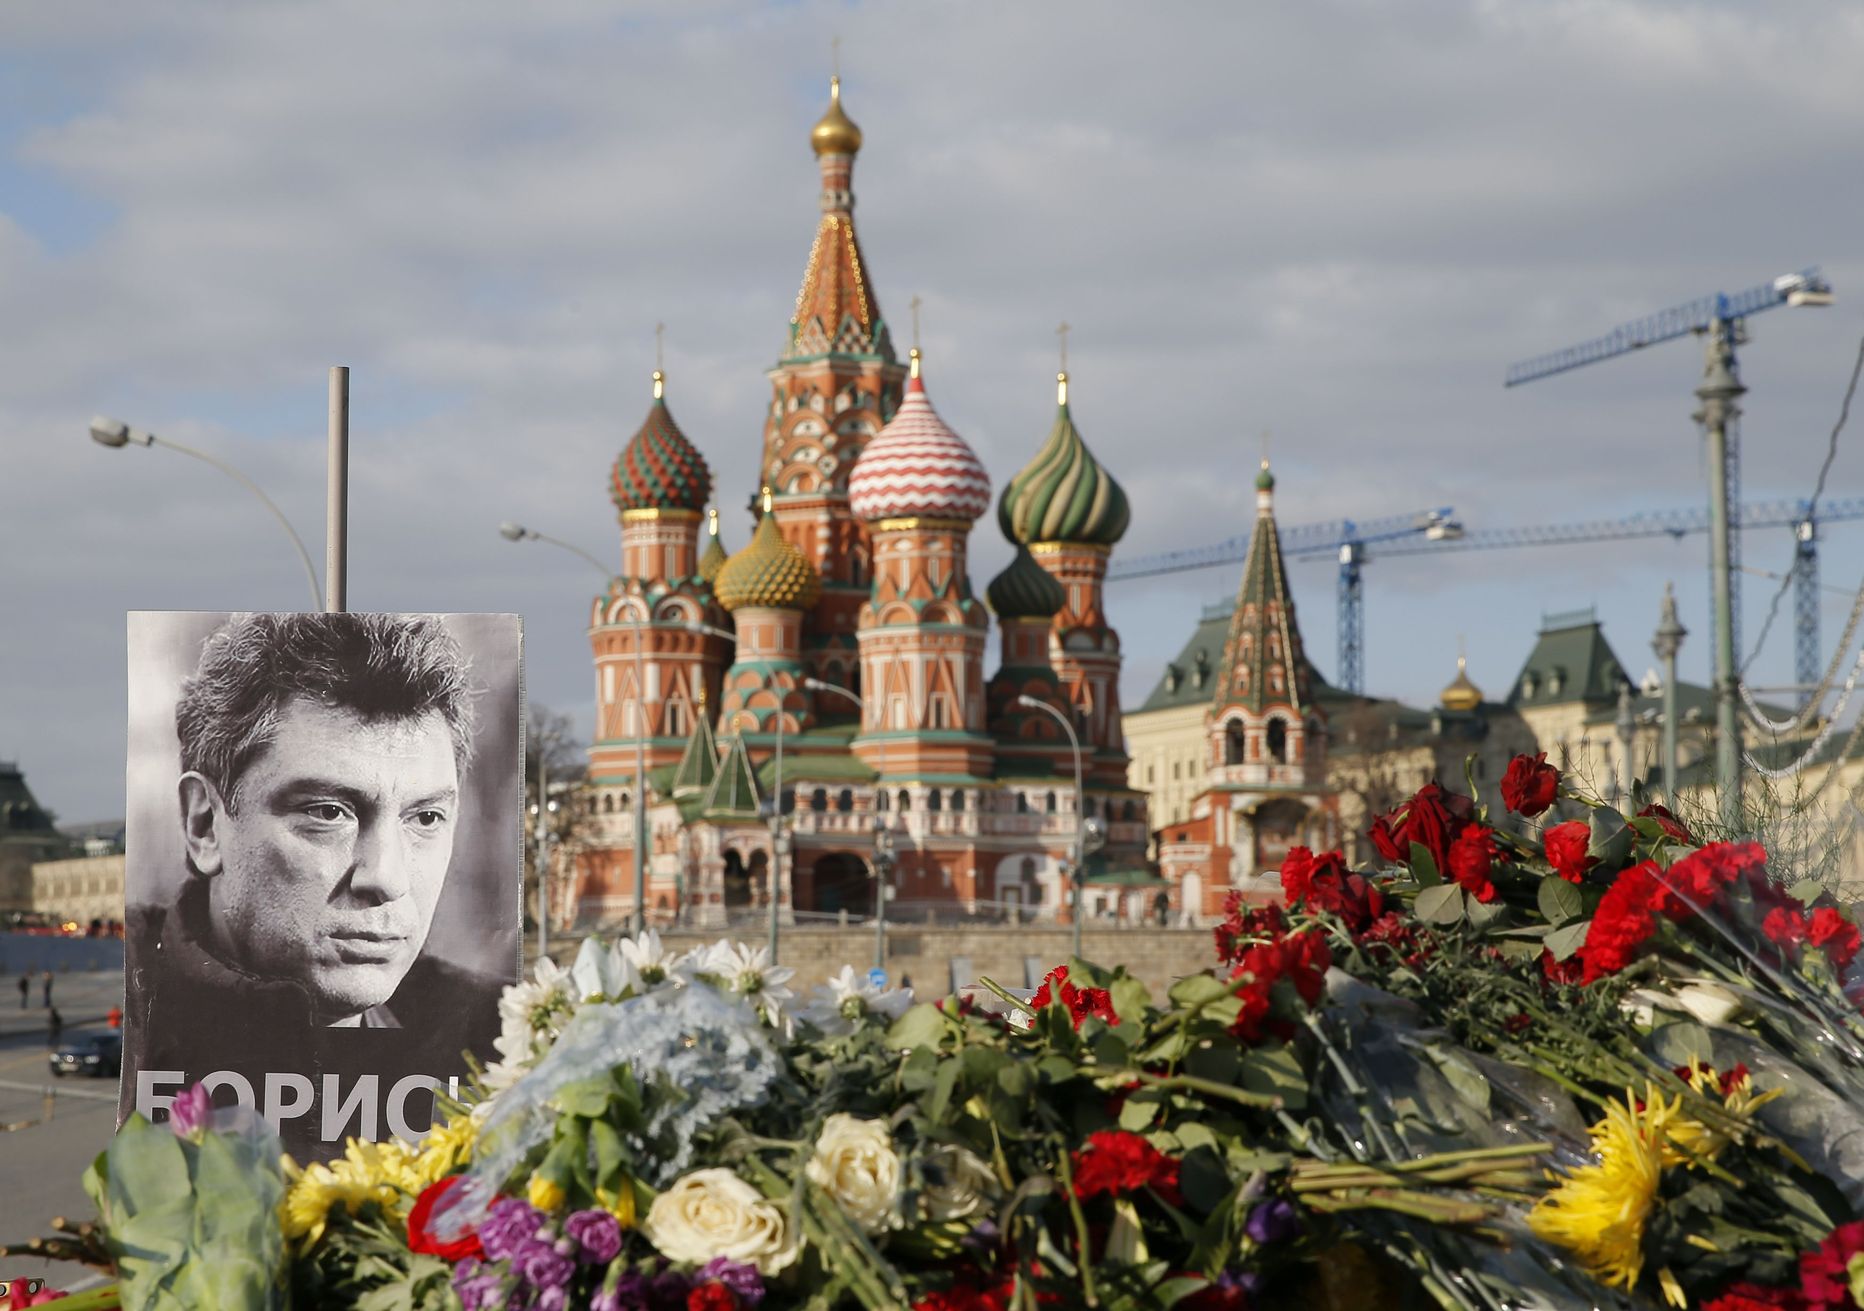 Борис Немцов был застрелен 27 февраля на Большом Москворецком мосту.